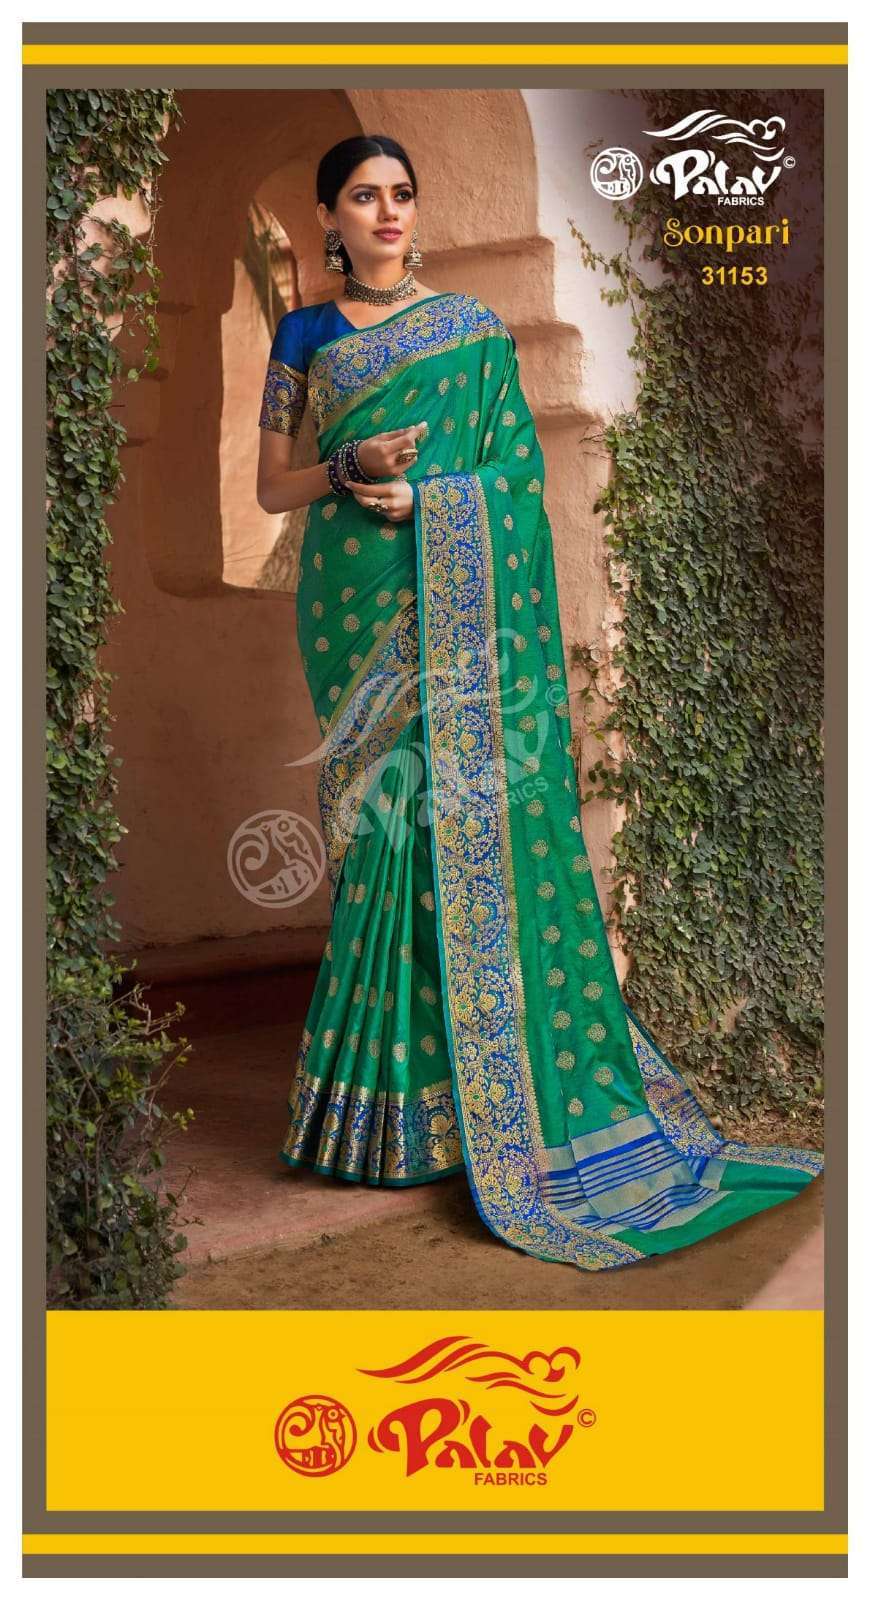 Palav Fabrics Sonpari Silk Traditional Sarees Collection 05